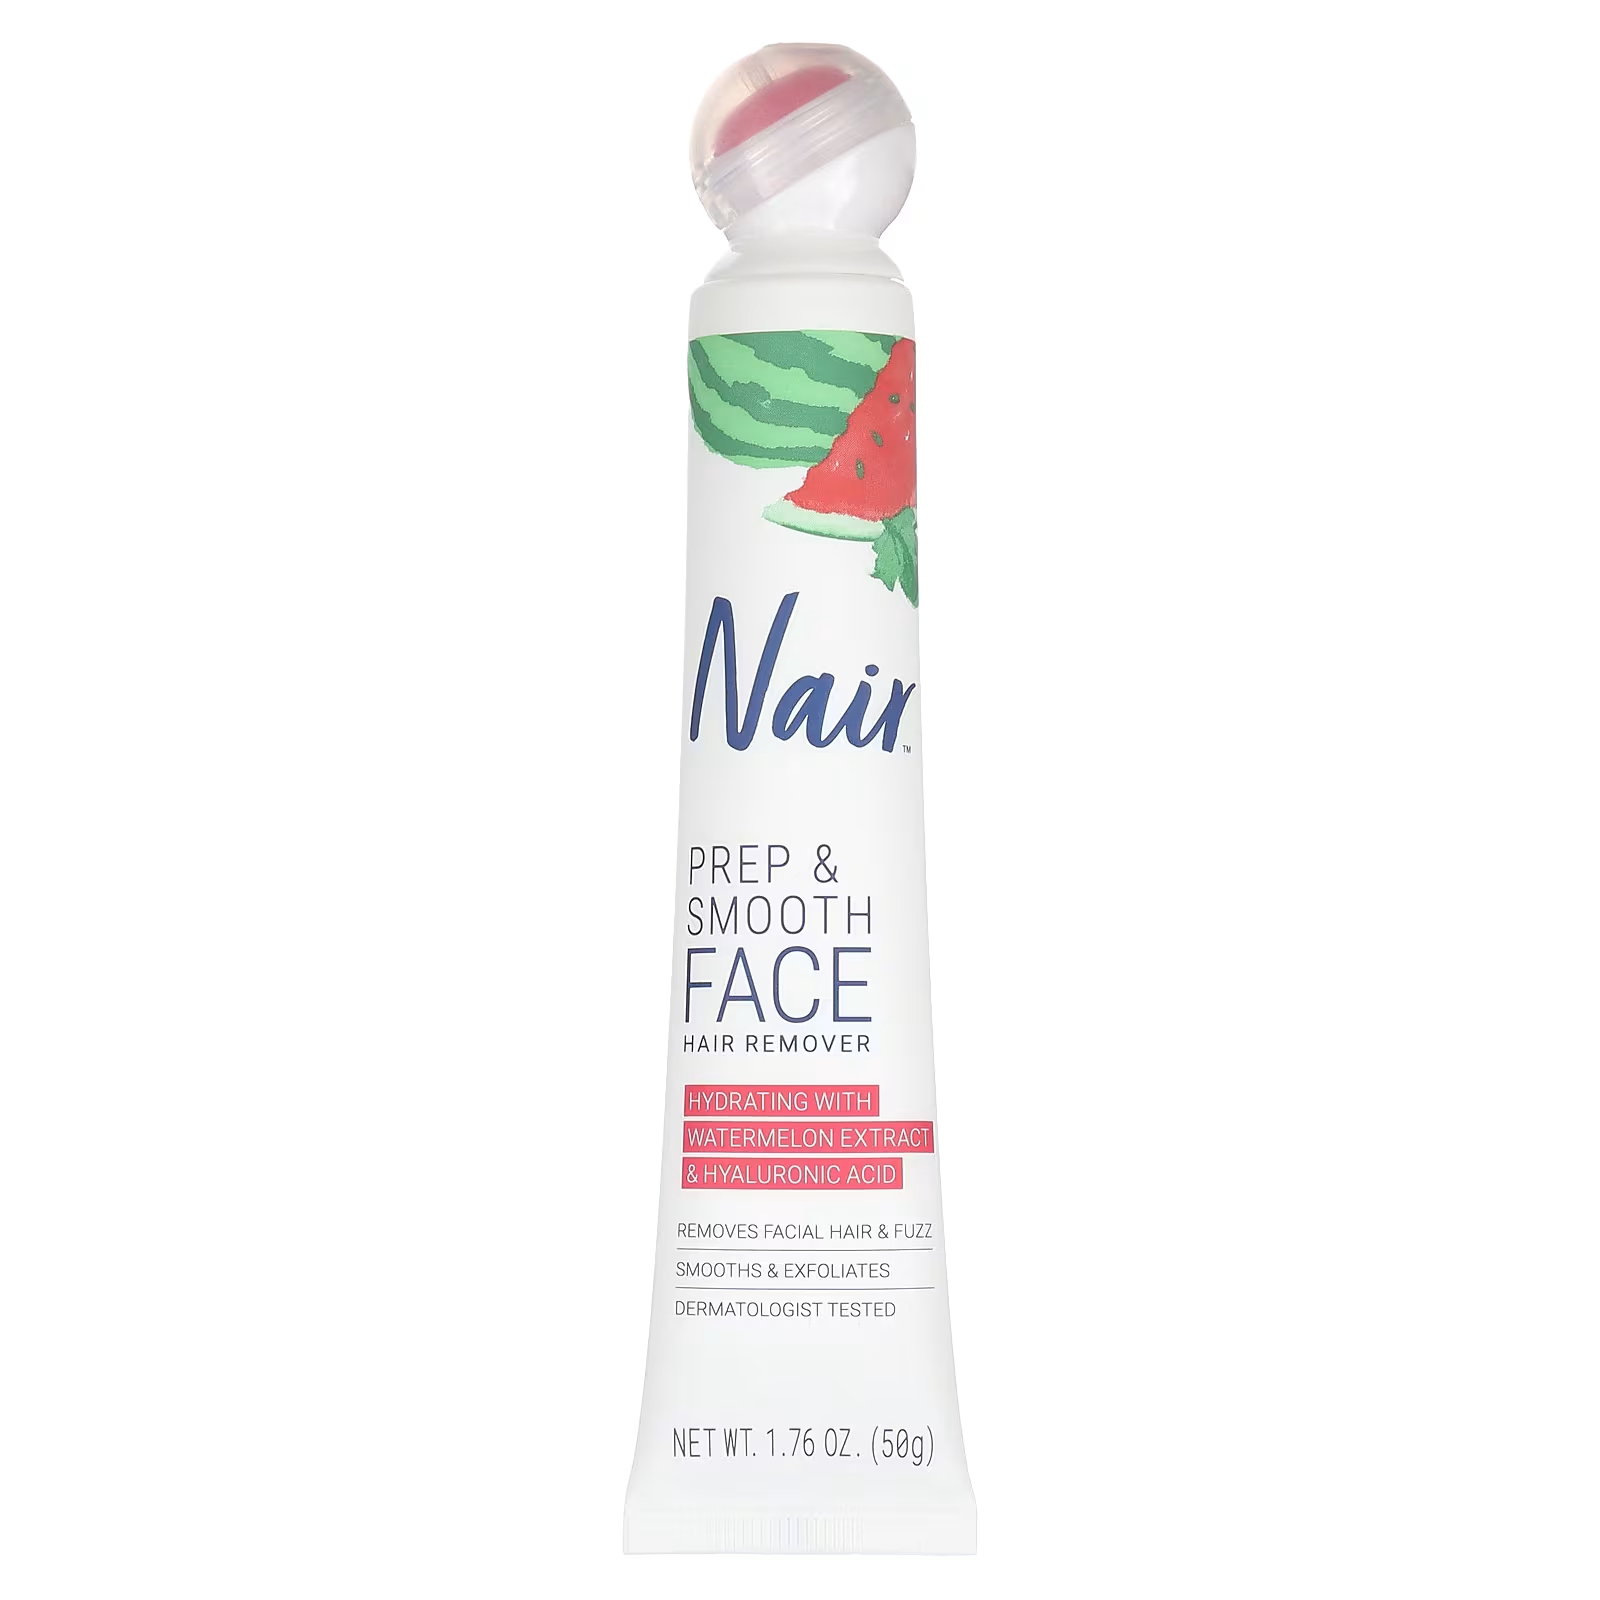 Средство для удаления волос Nair Prep & Smooth Face, 50 г средство для удаления волос bikini cream sensitive formula 1 7 унции 48 г nair